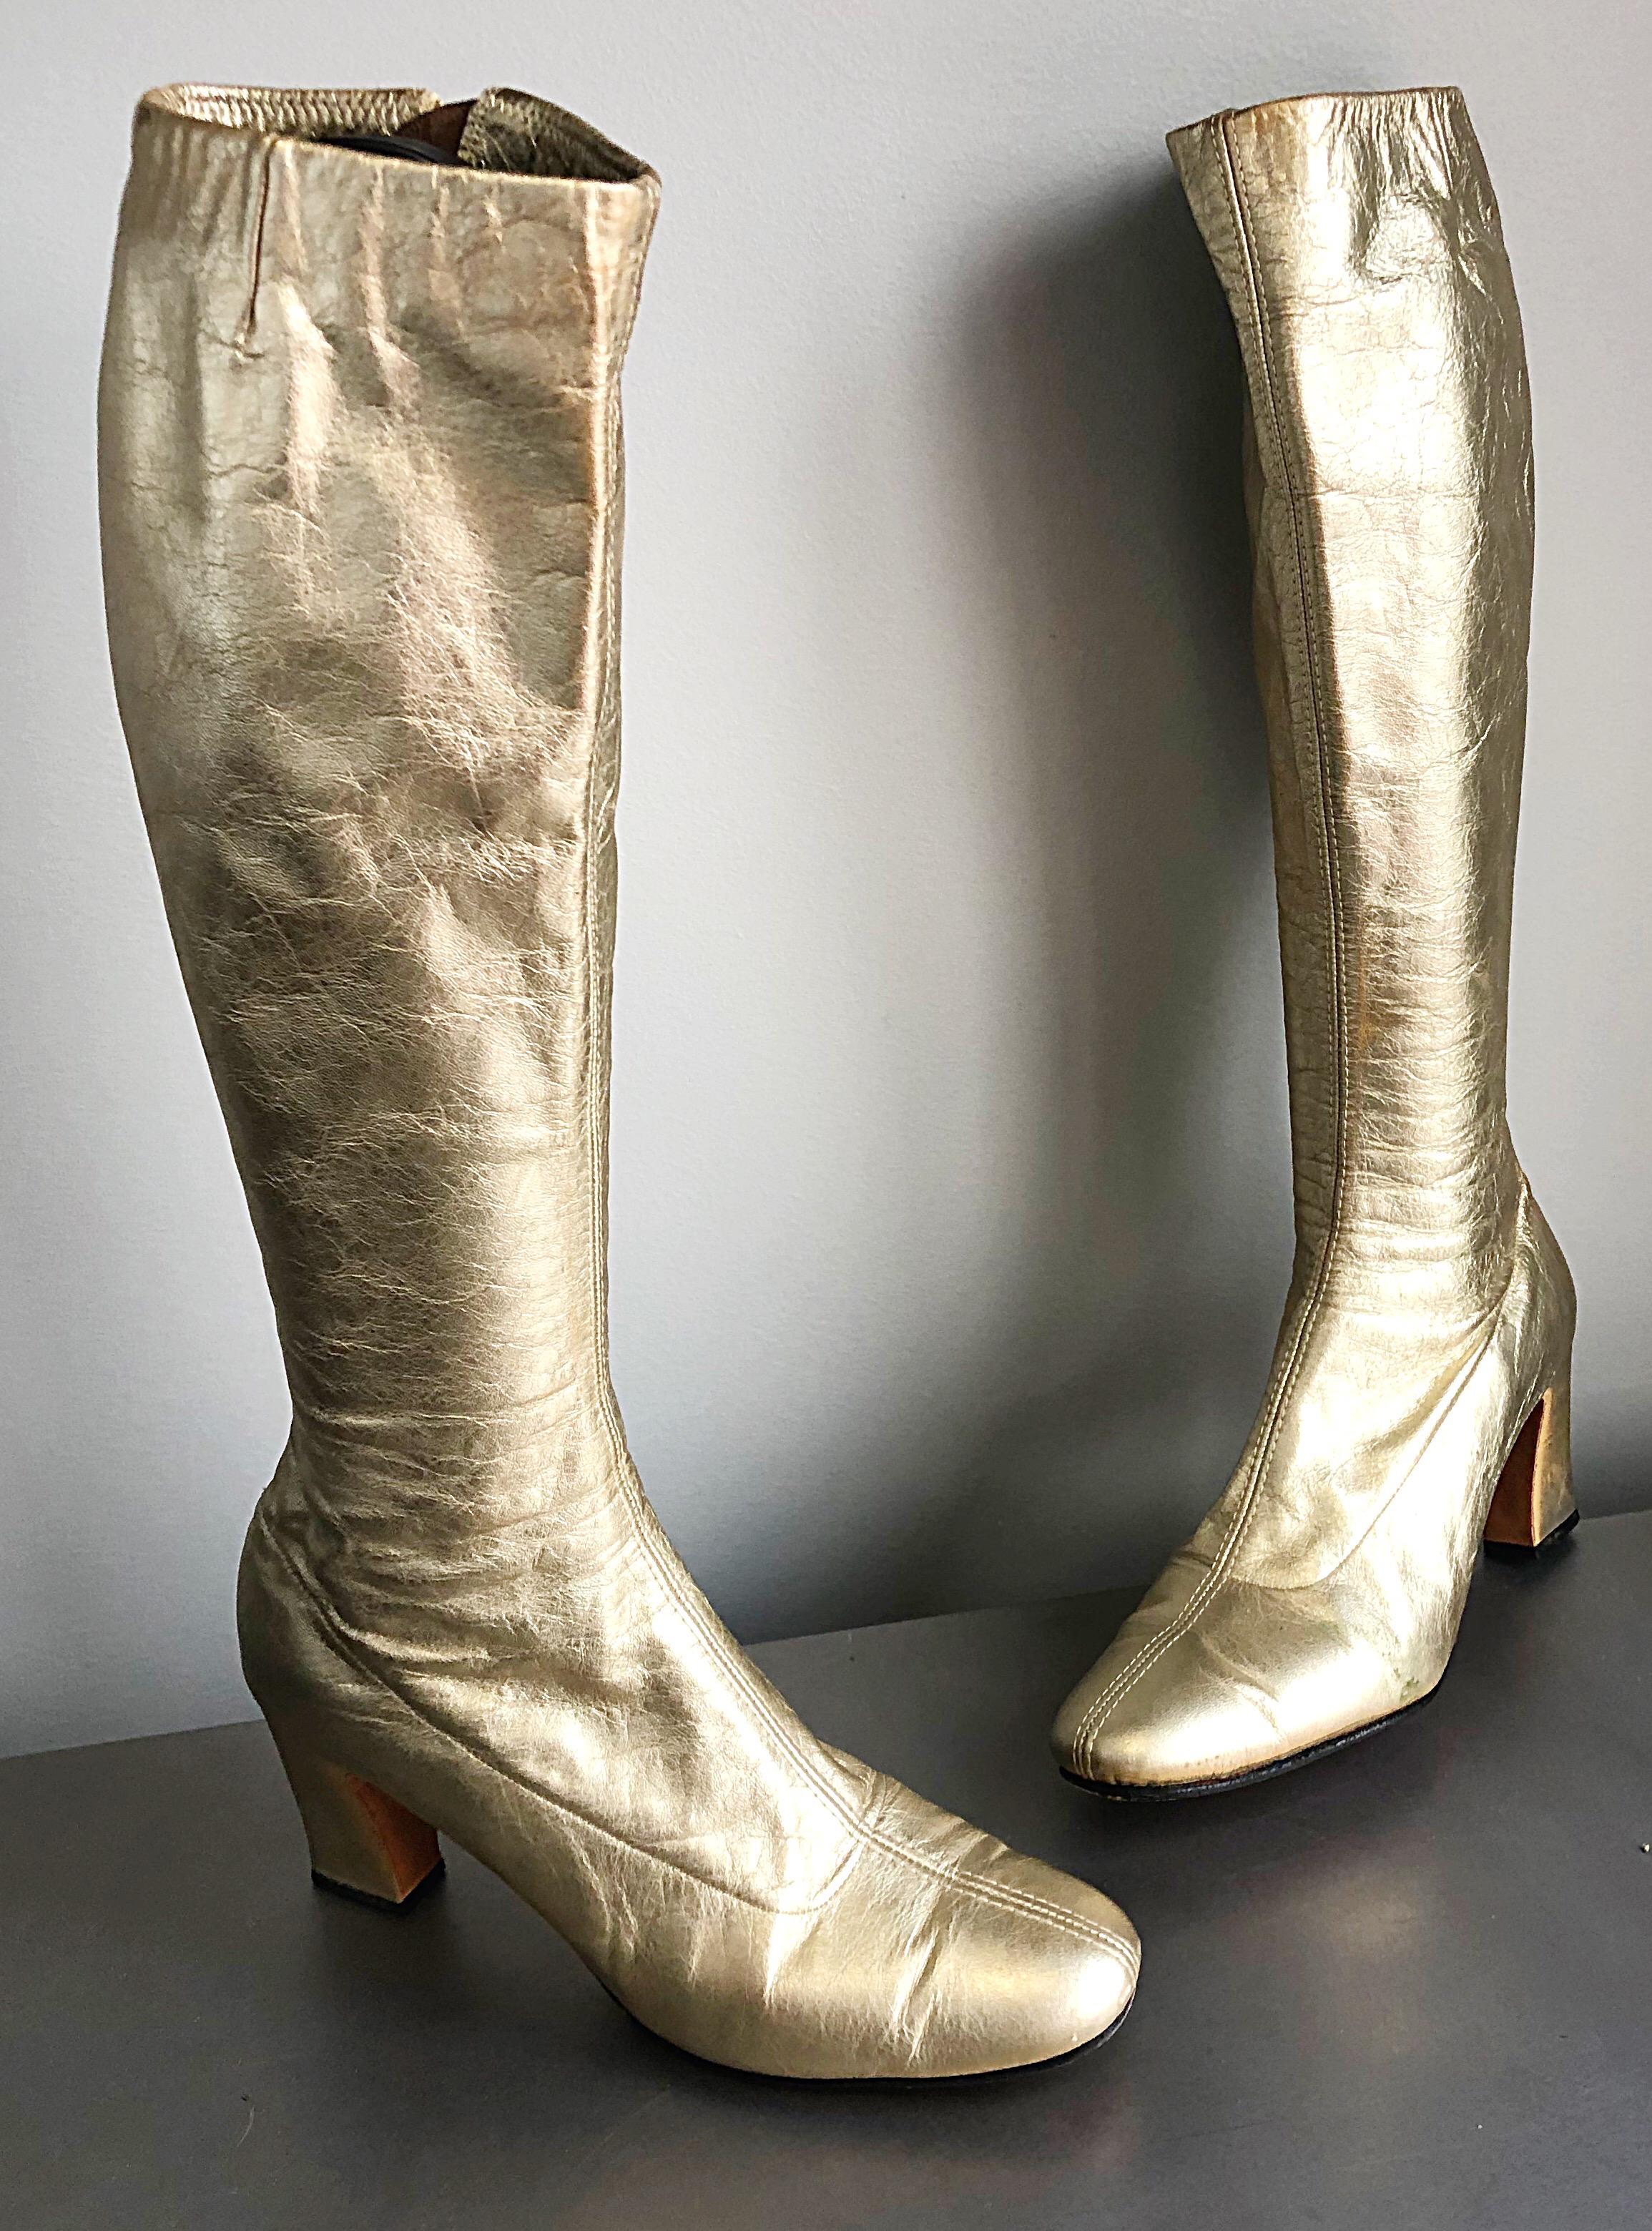 Superbes bottes go-go en cuir doré du milieu et de la fin des années 60 ! Caractéristiques de l'or mat métallisé. Semelle en cuir. Fermeture éclair à l'intérieur de la jambe. Peut facilement être habillé ou décontracté. Idéal avec une jupe, une